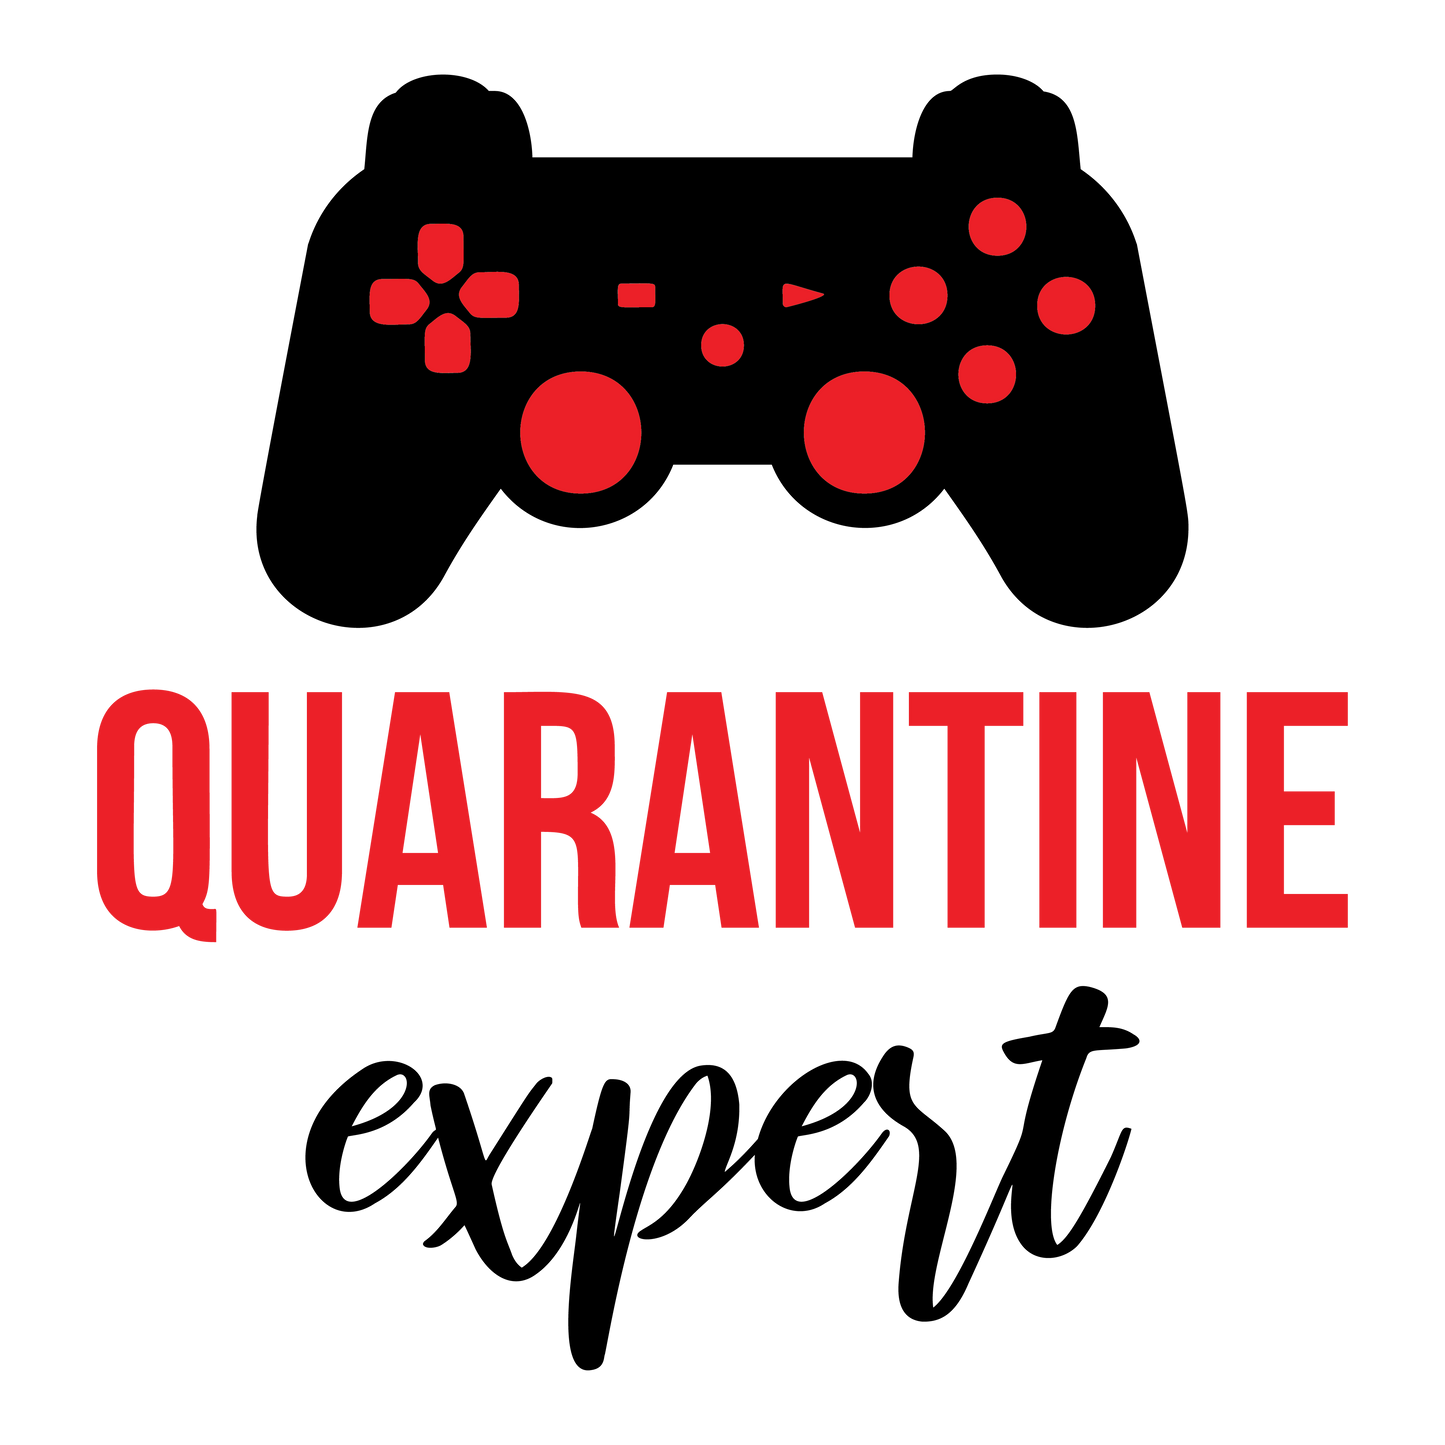 Quarantine Expert